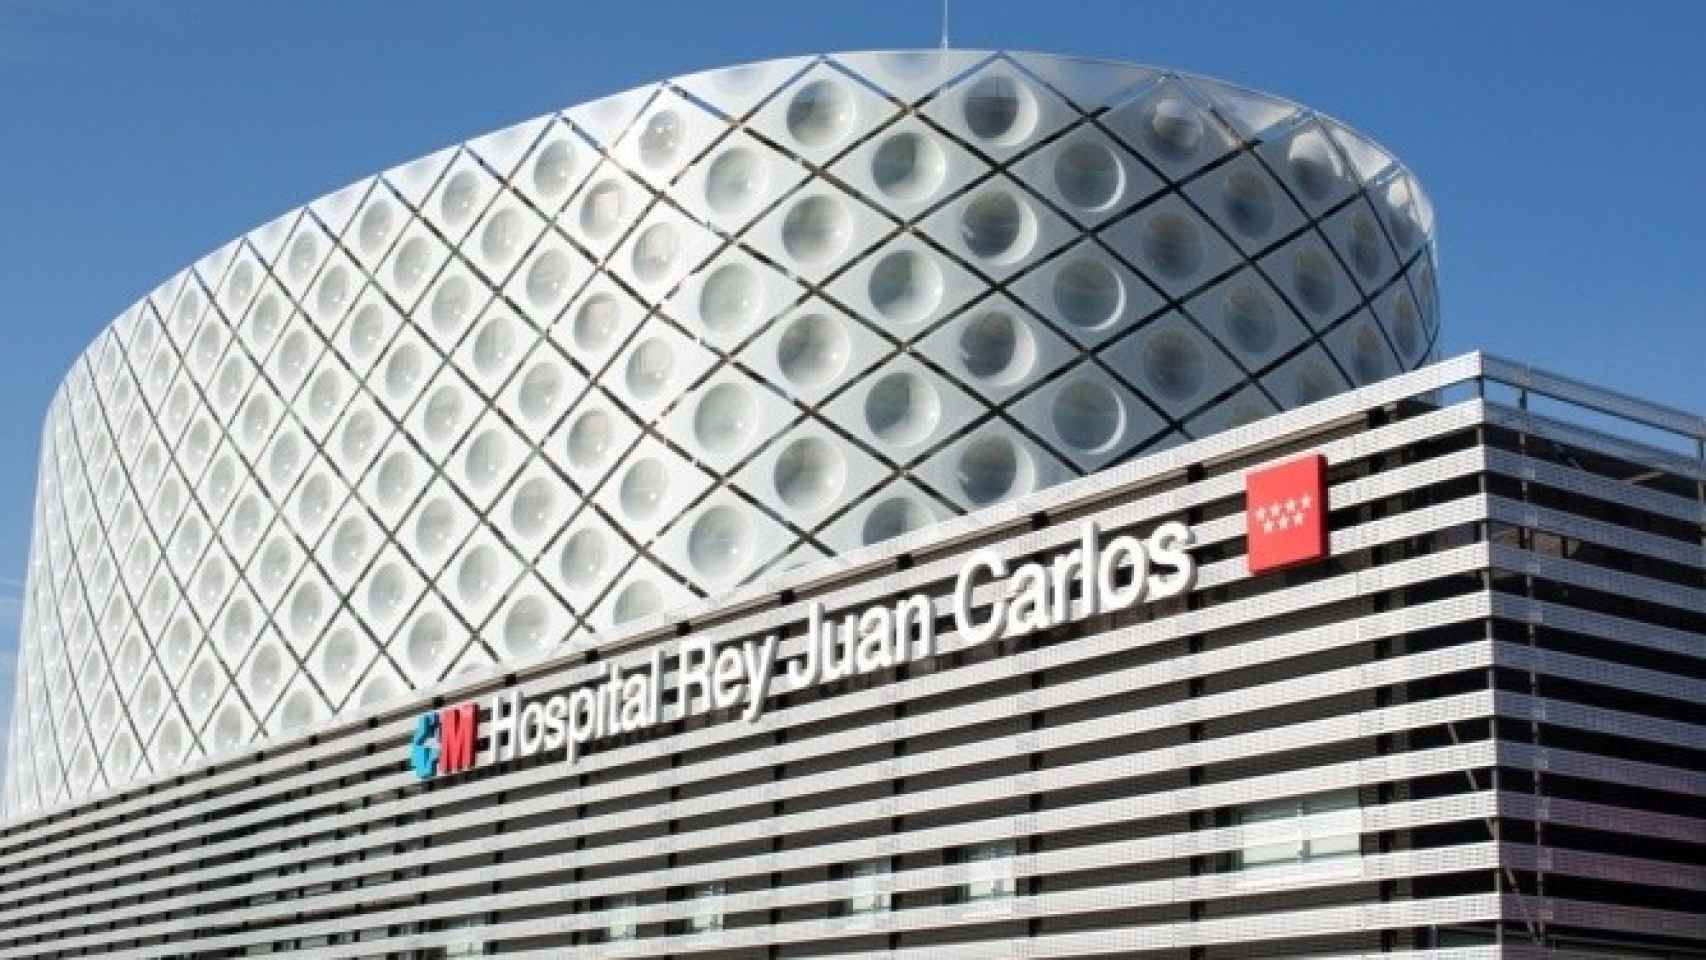 El Hospital Universitario Rey Juan Carlos de Móstoles ha instalado un avanzado navegador intracardiaco con múltiples beneficios para los pacientes.